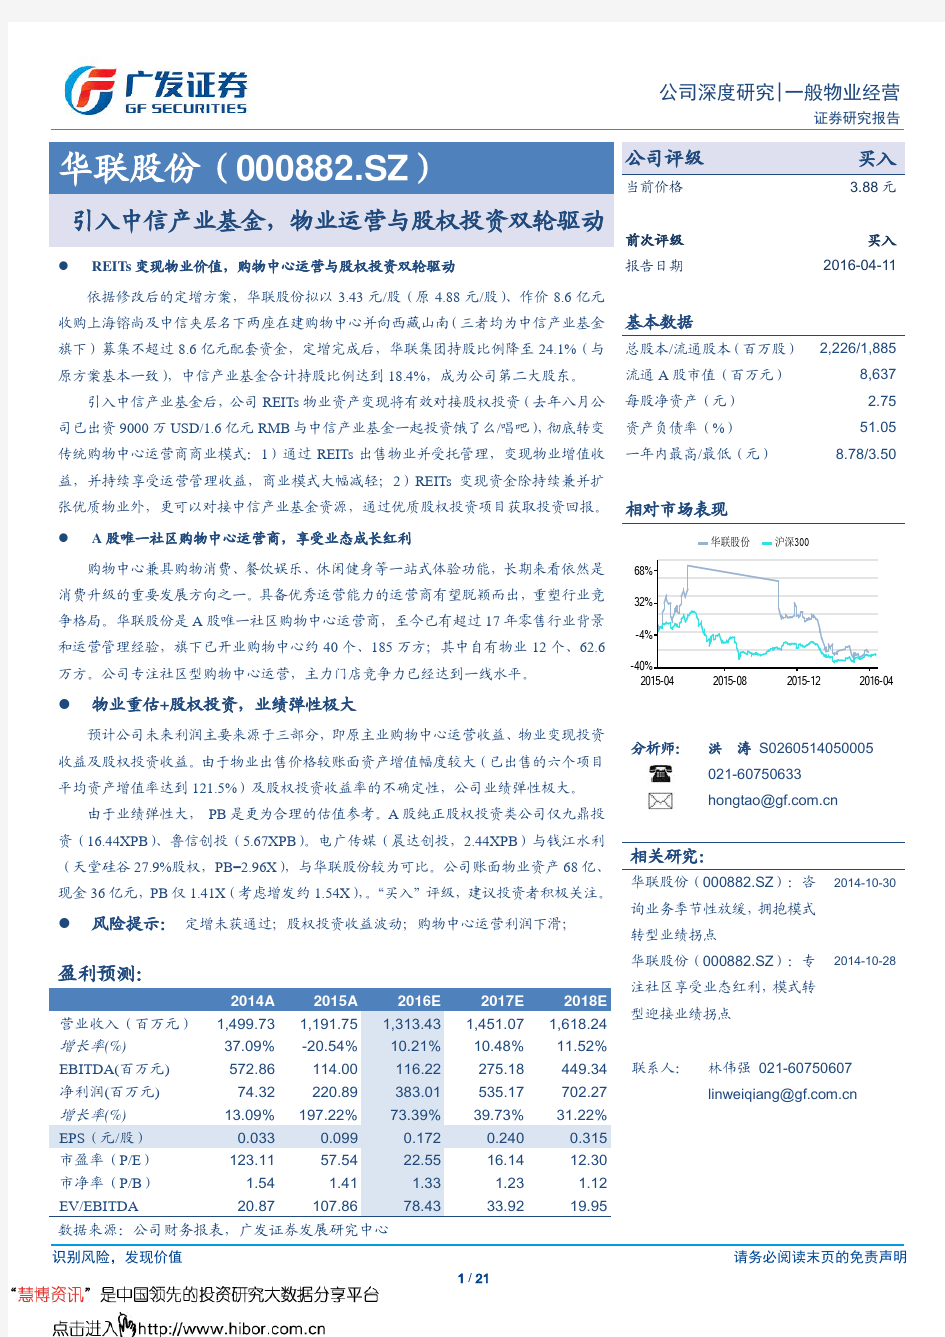 华联股份：物业运营与股权投资双轮驱动 买入评级